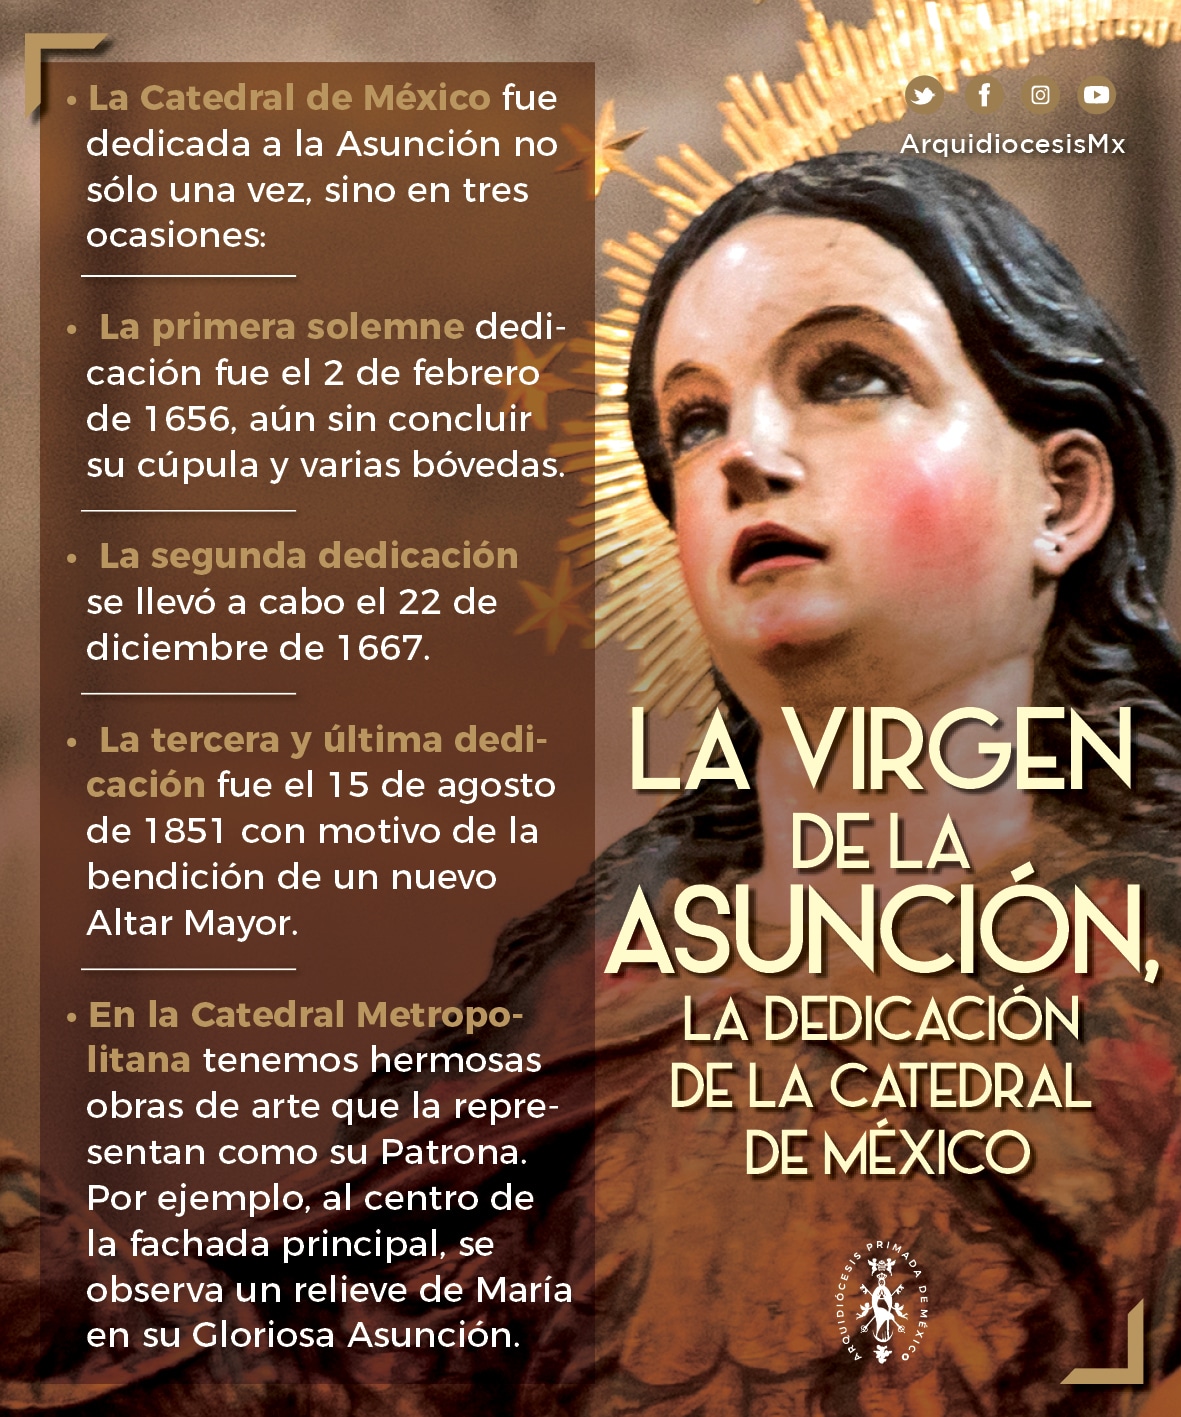 Virgen de la Asunción en la Catedral del la Ciudad de México